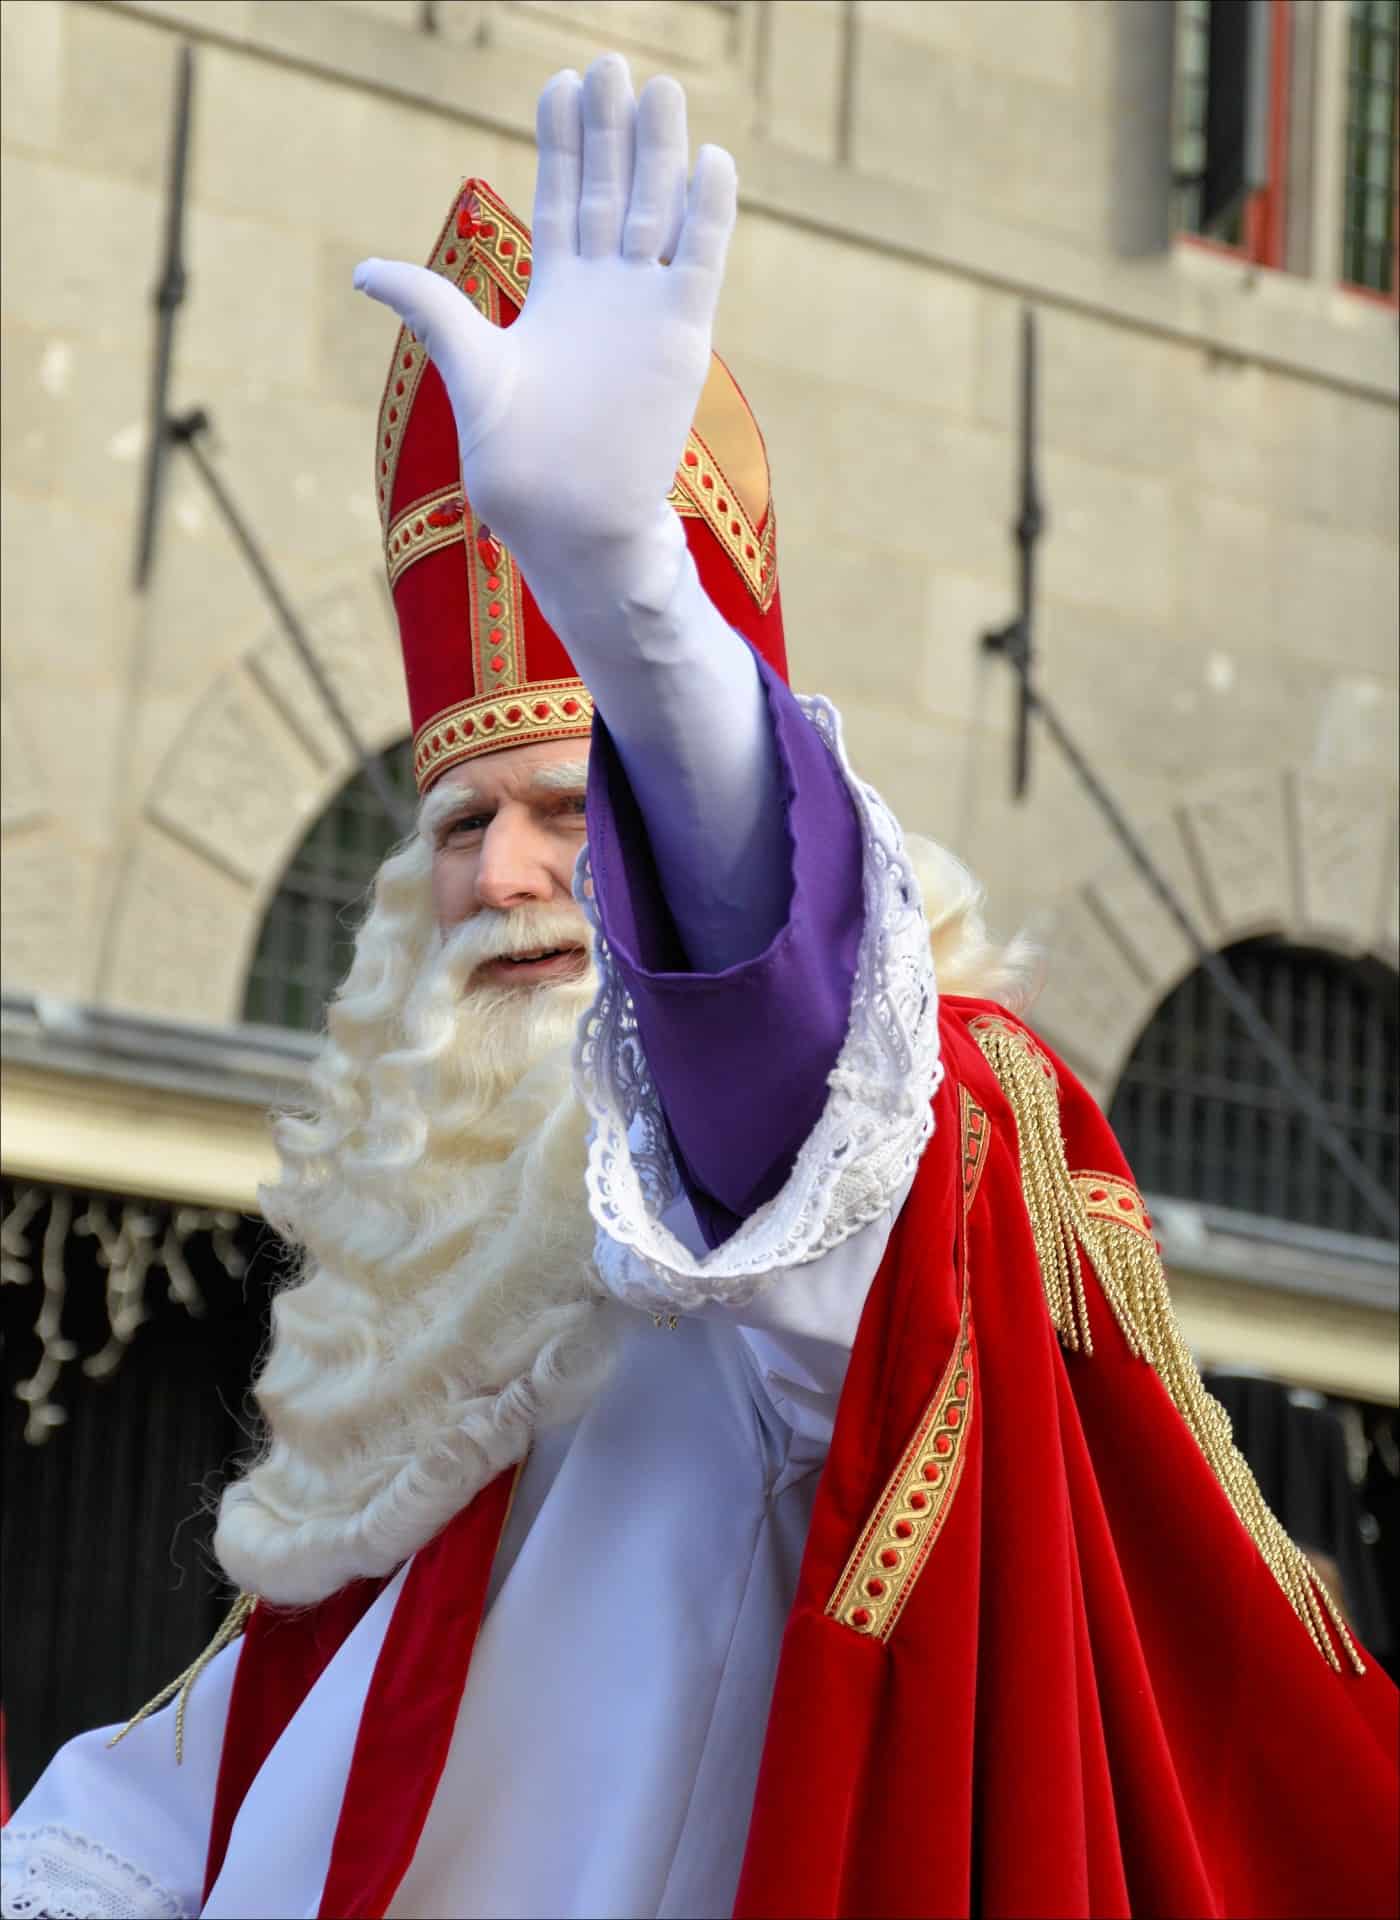 Άγιος Βασίλης αλά Ολλανδικά Sinterklaas